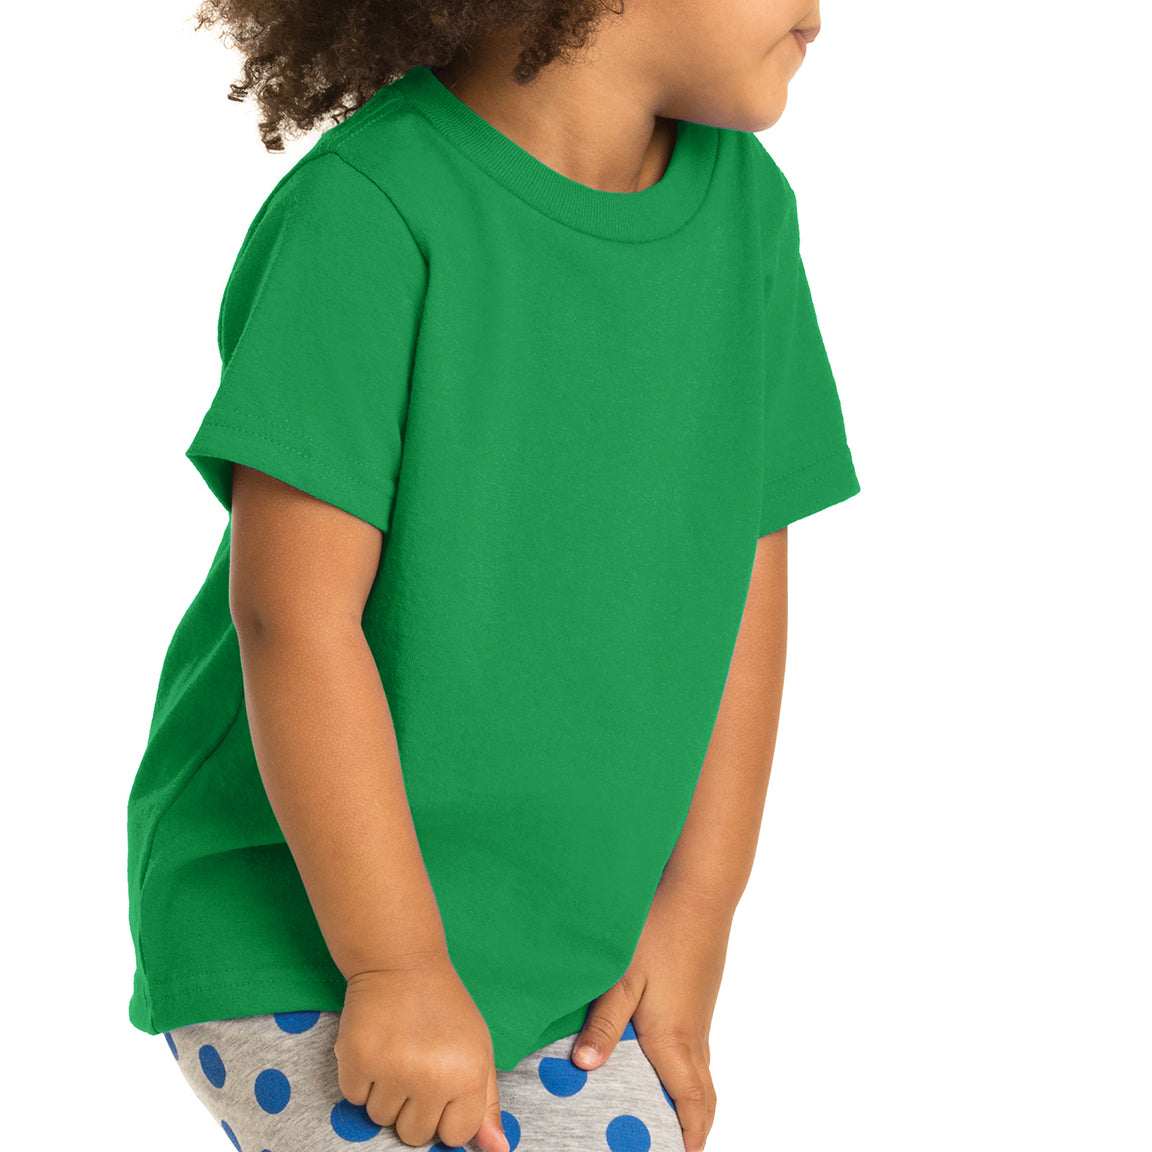 Toddler Core Cotton Tee - Clover Green